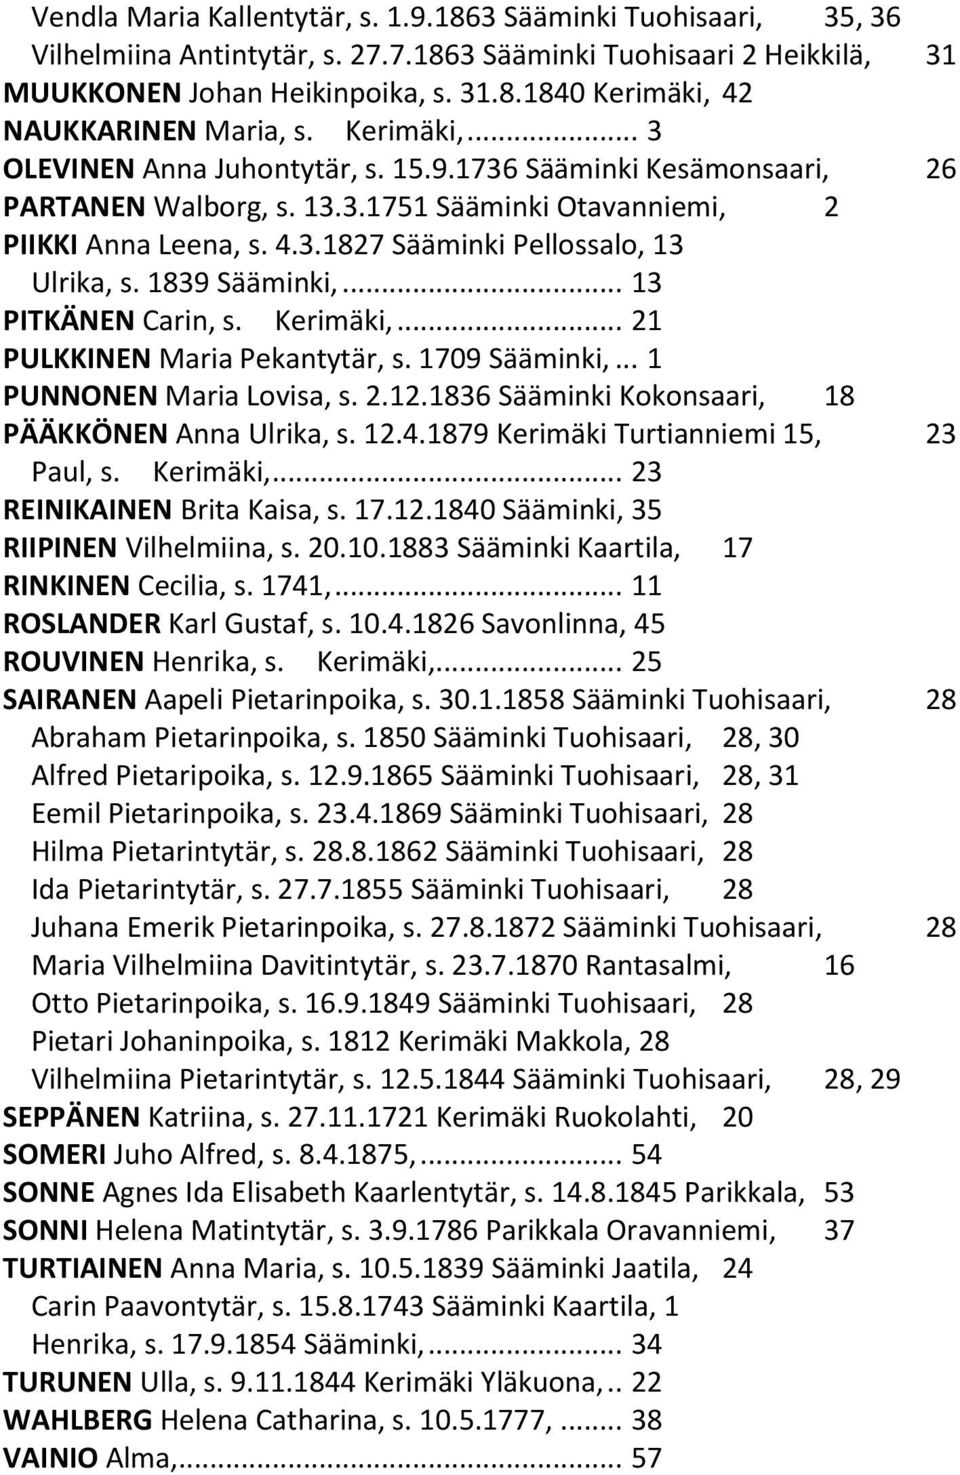 1839 Sääminki,... 13 PITKÄNEN Carin, s. Kerimäki,... 21 PULKKINEN Maria Pekantytär, s. 1709 Sääminki,... 1 PUNNONEN Maria Lovisa, s. 2.12.1836 Sääminki Kokonsaari, 18 PÄÄKKÖNEN Anna Ulrika, s. 12.4.